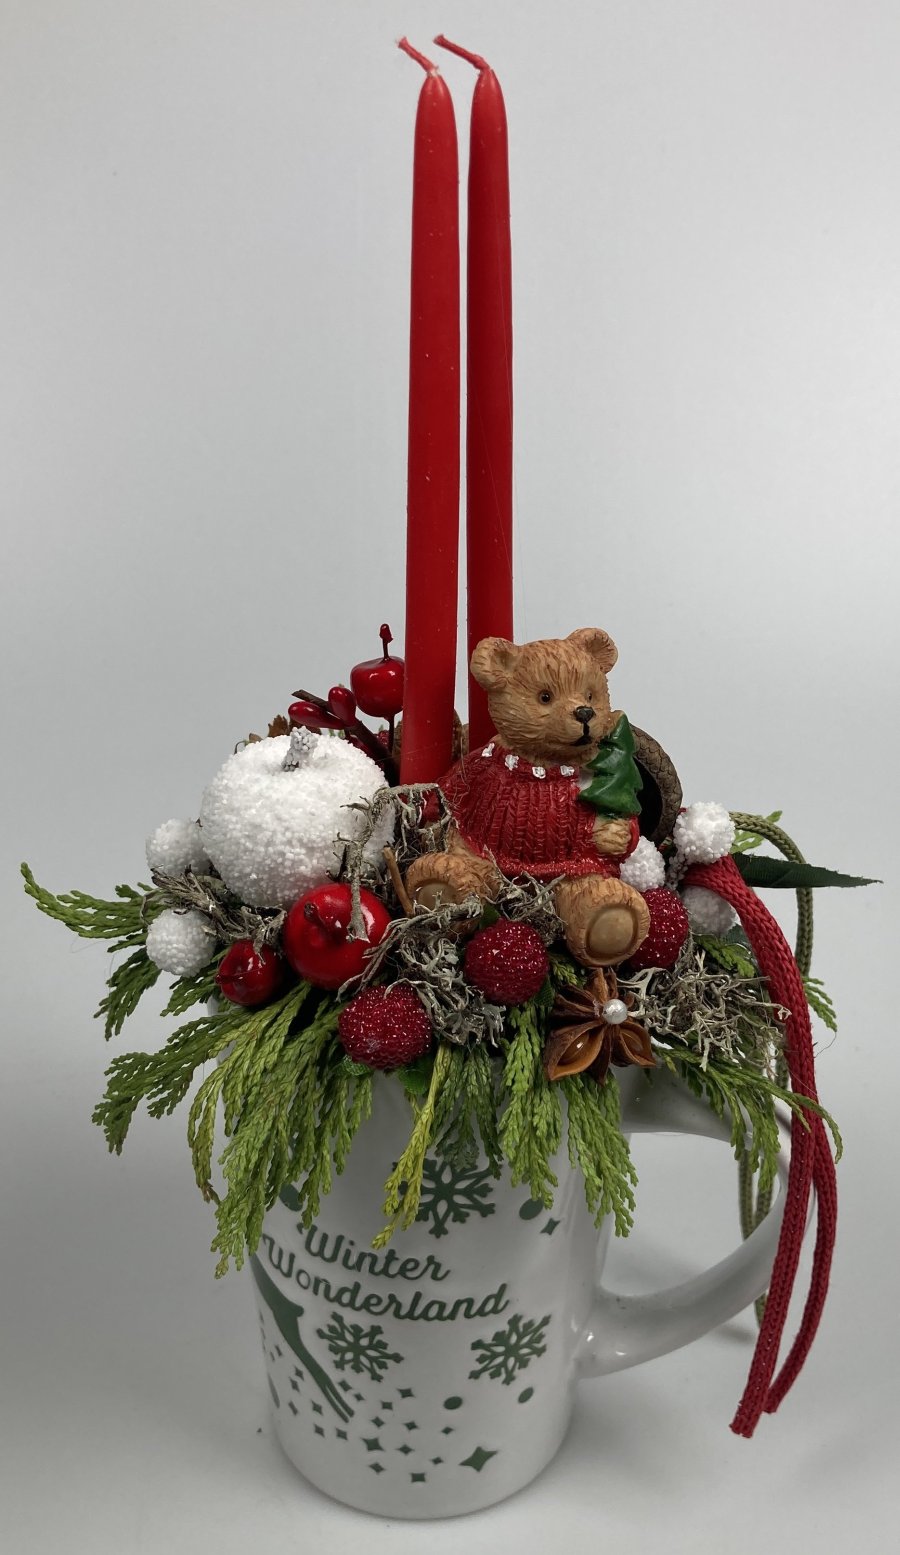 Piros pulcsis, szedresben csücsülő maci, töltött karácsonyi kerámiabögre tujaágyon, szalagokkal